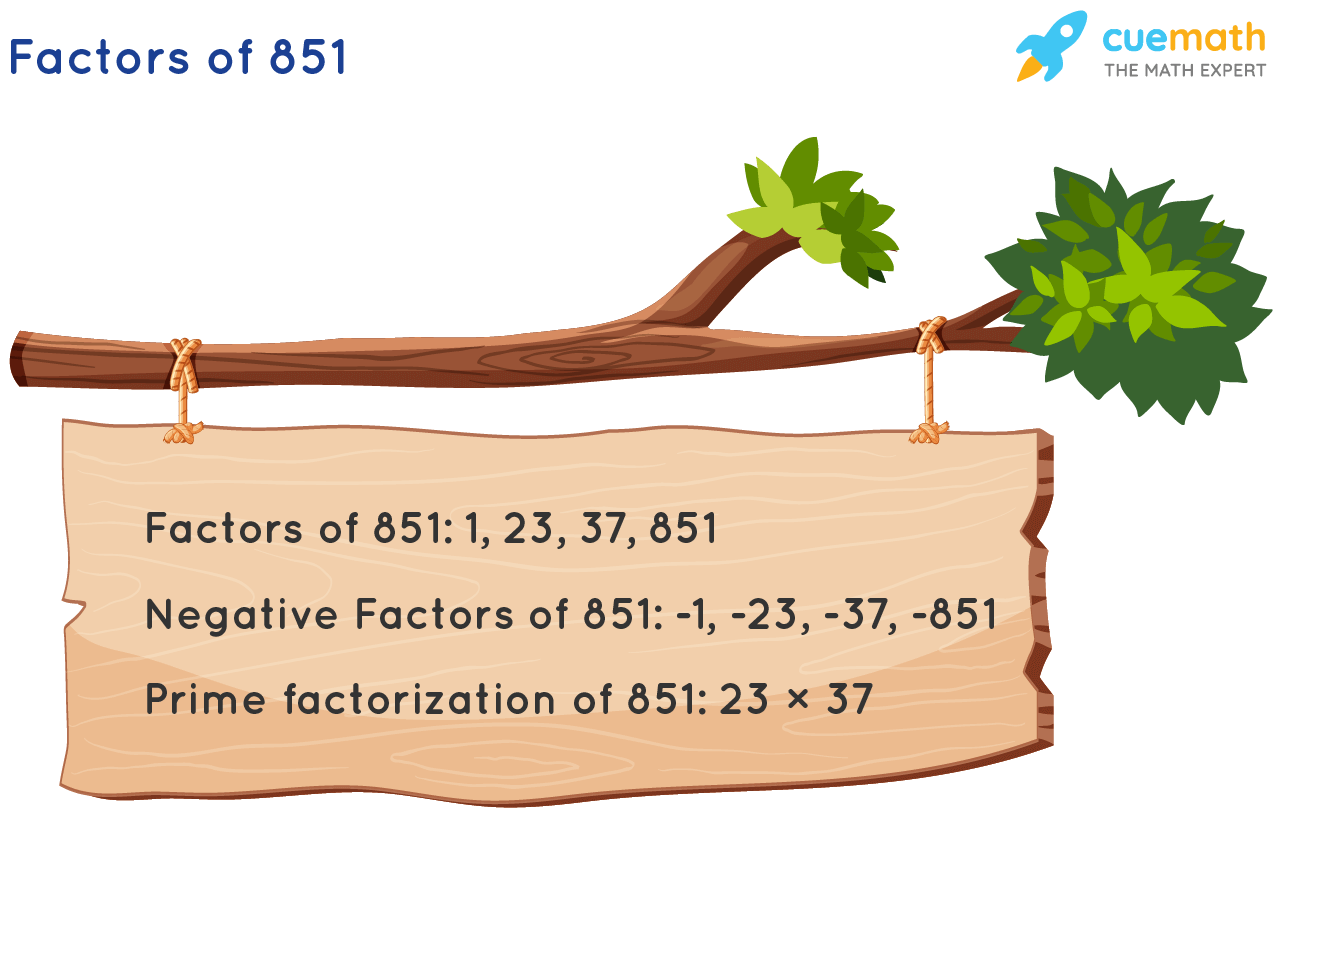 Factors of 851